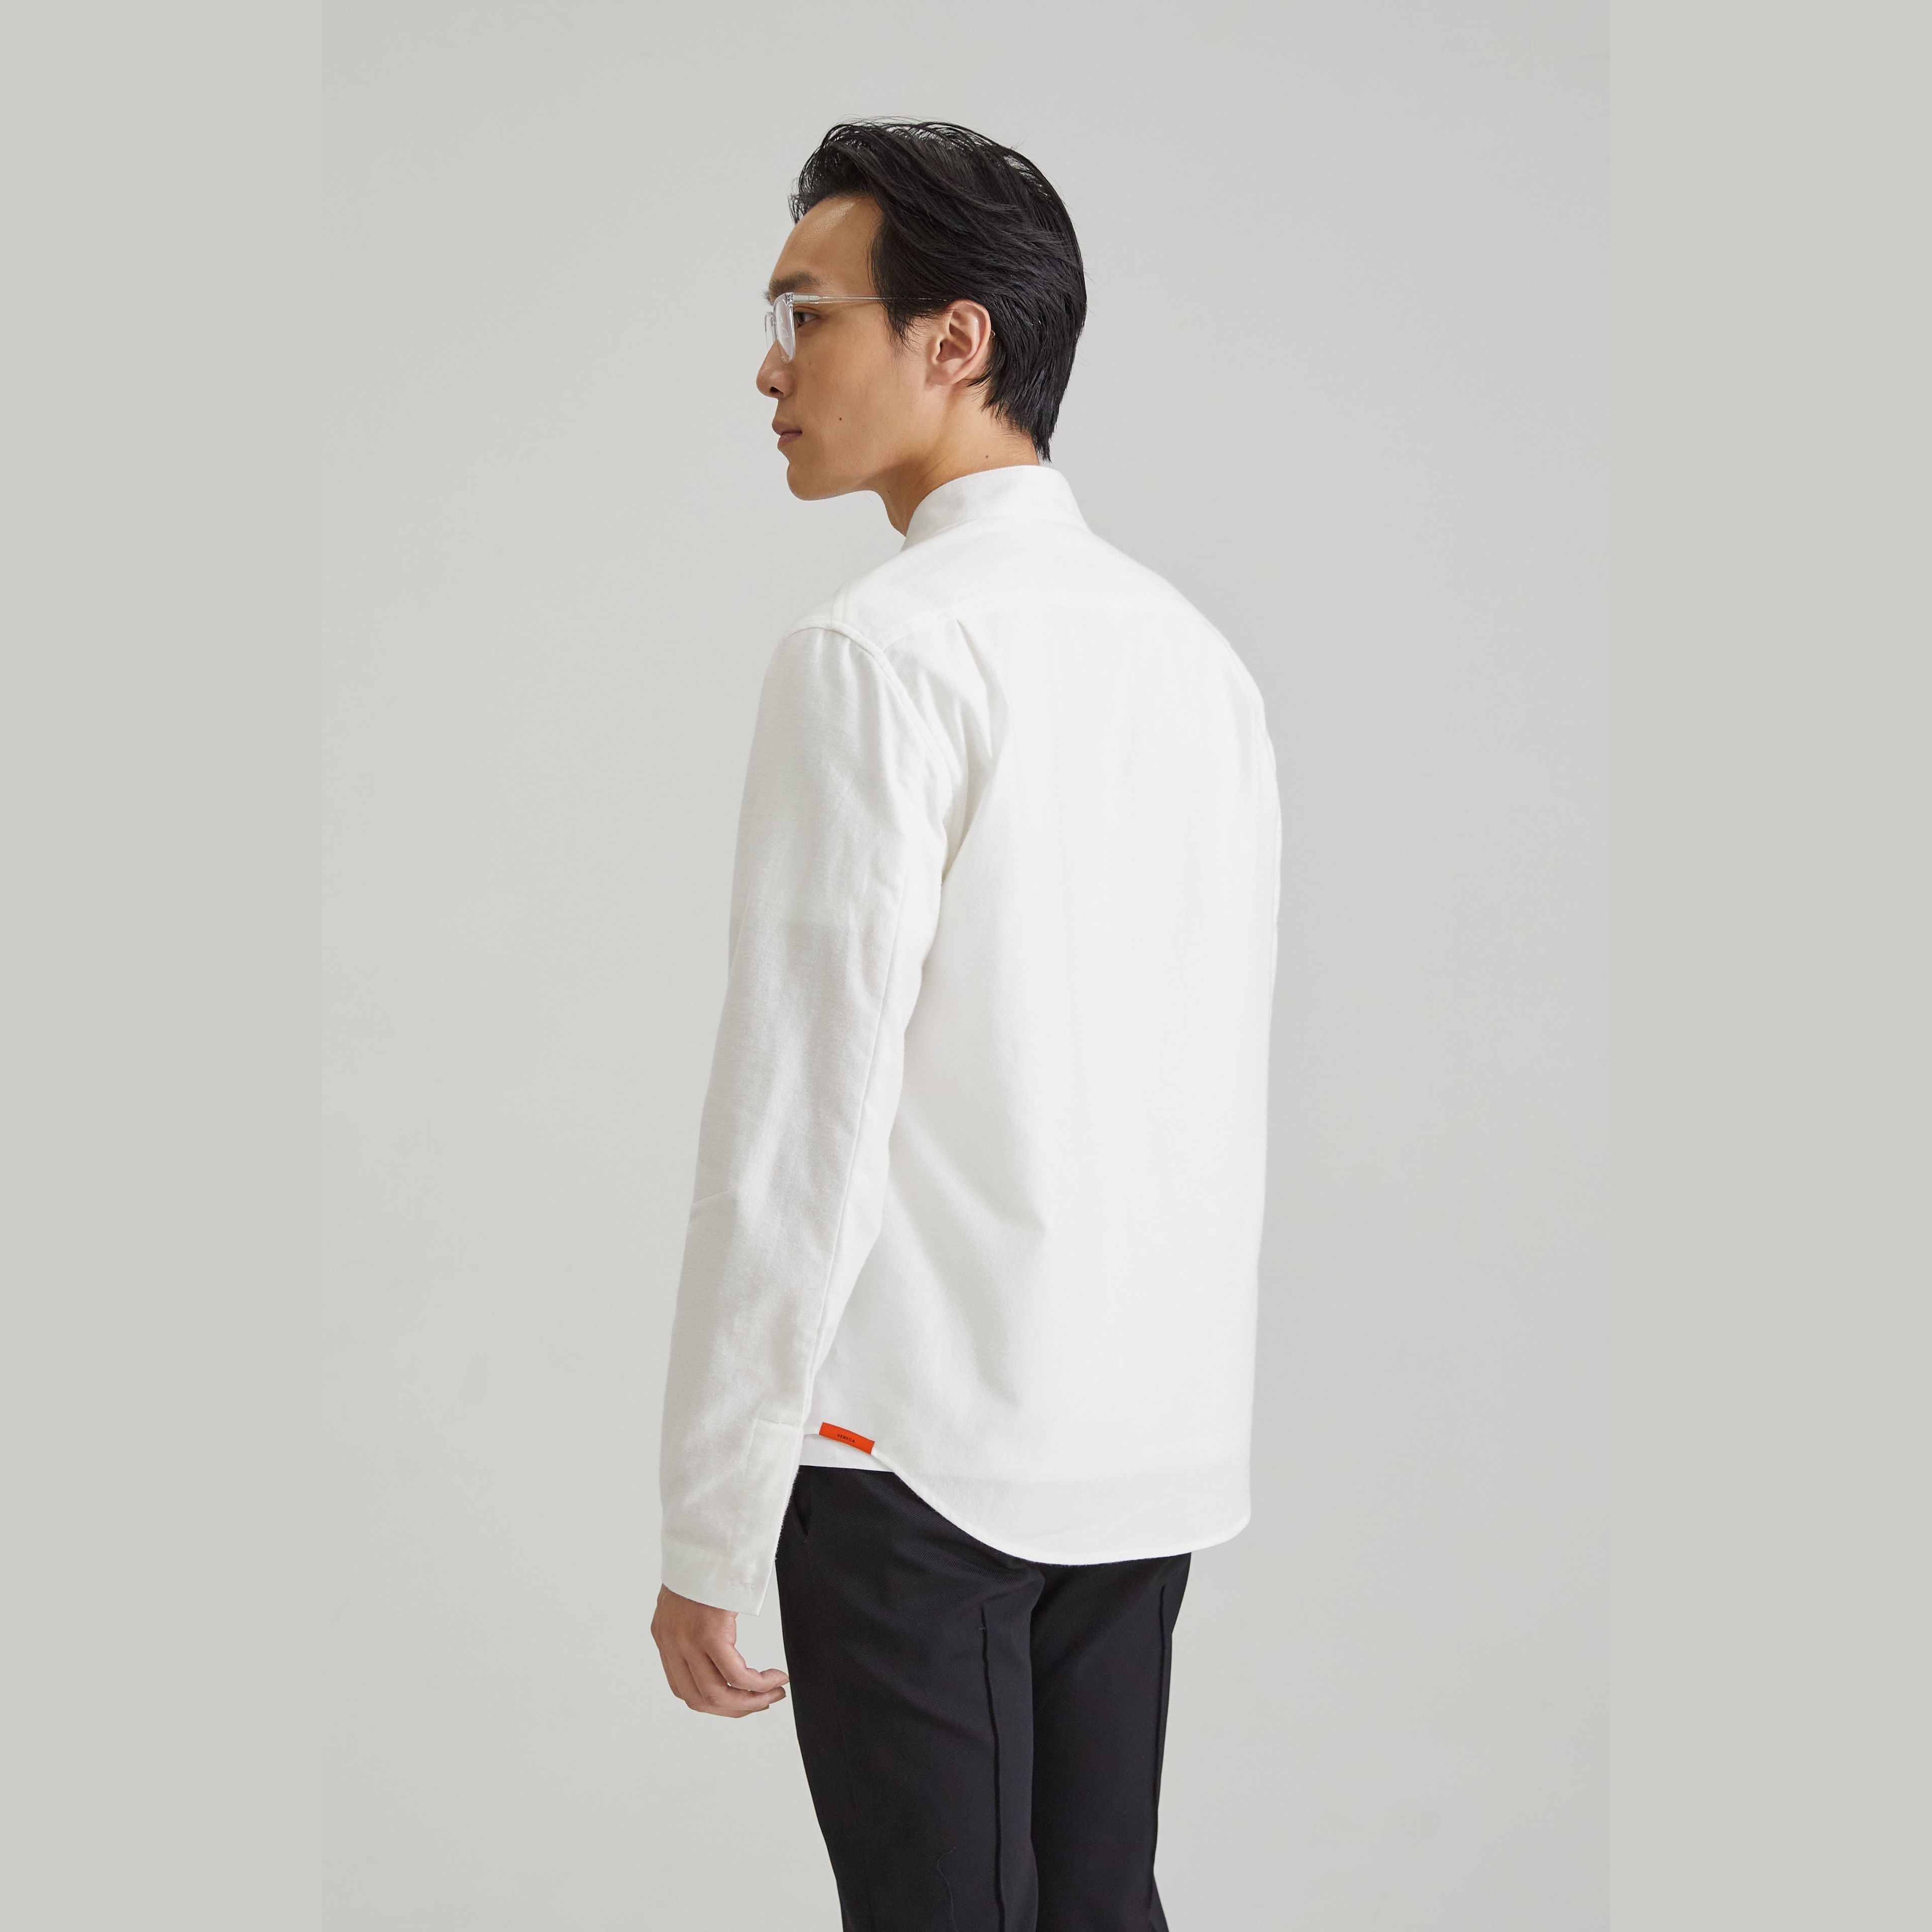 Modena Shirt / White Flannel